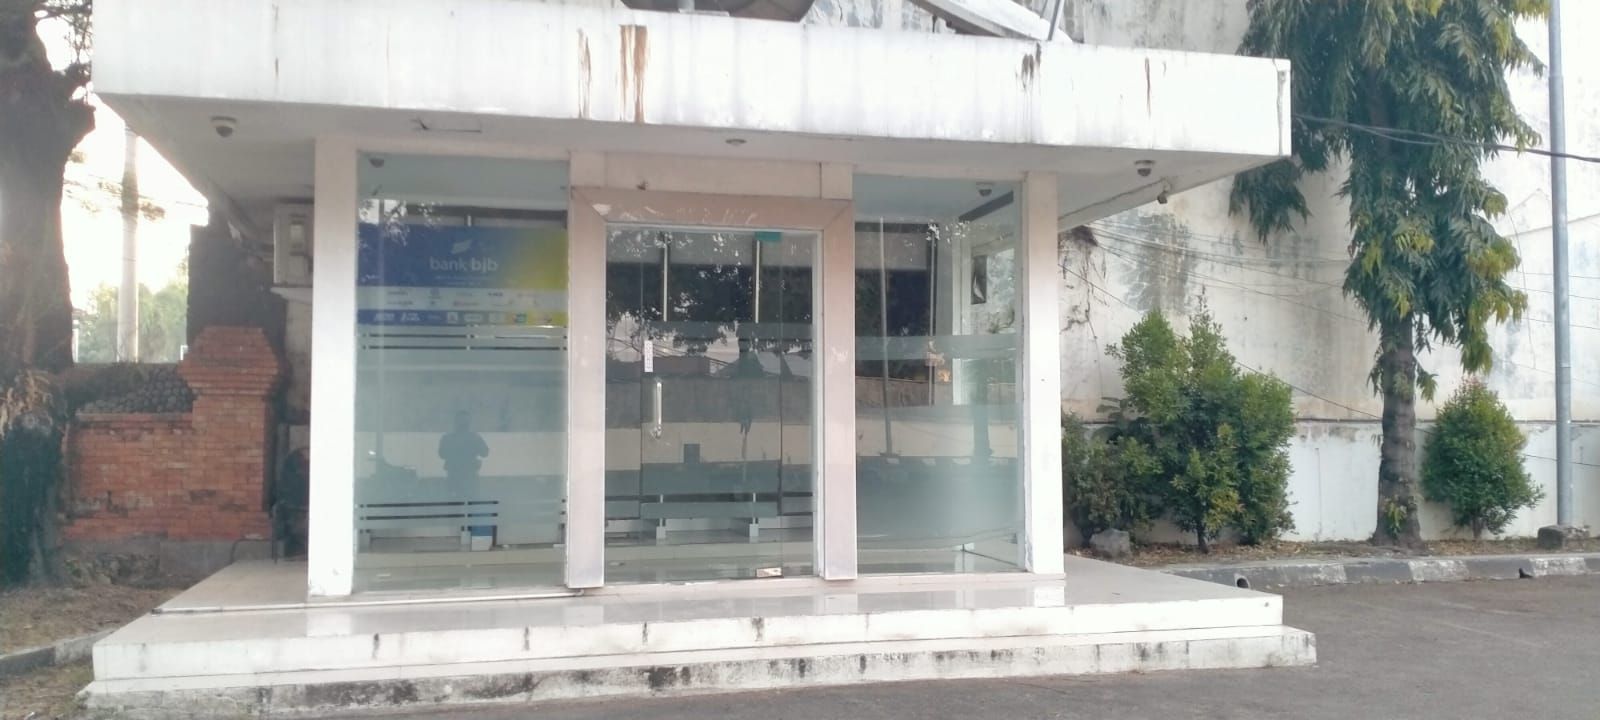 SALAH satu lokasi ATM yang ditarik perbankan dari wilayah Cirebon